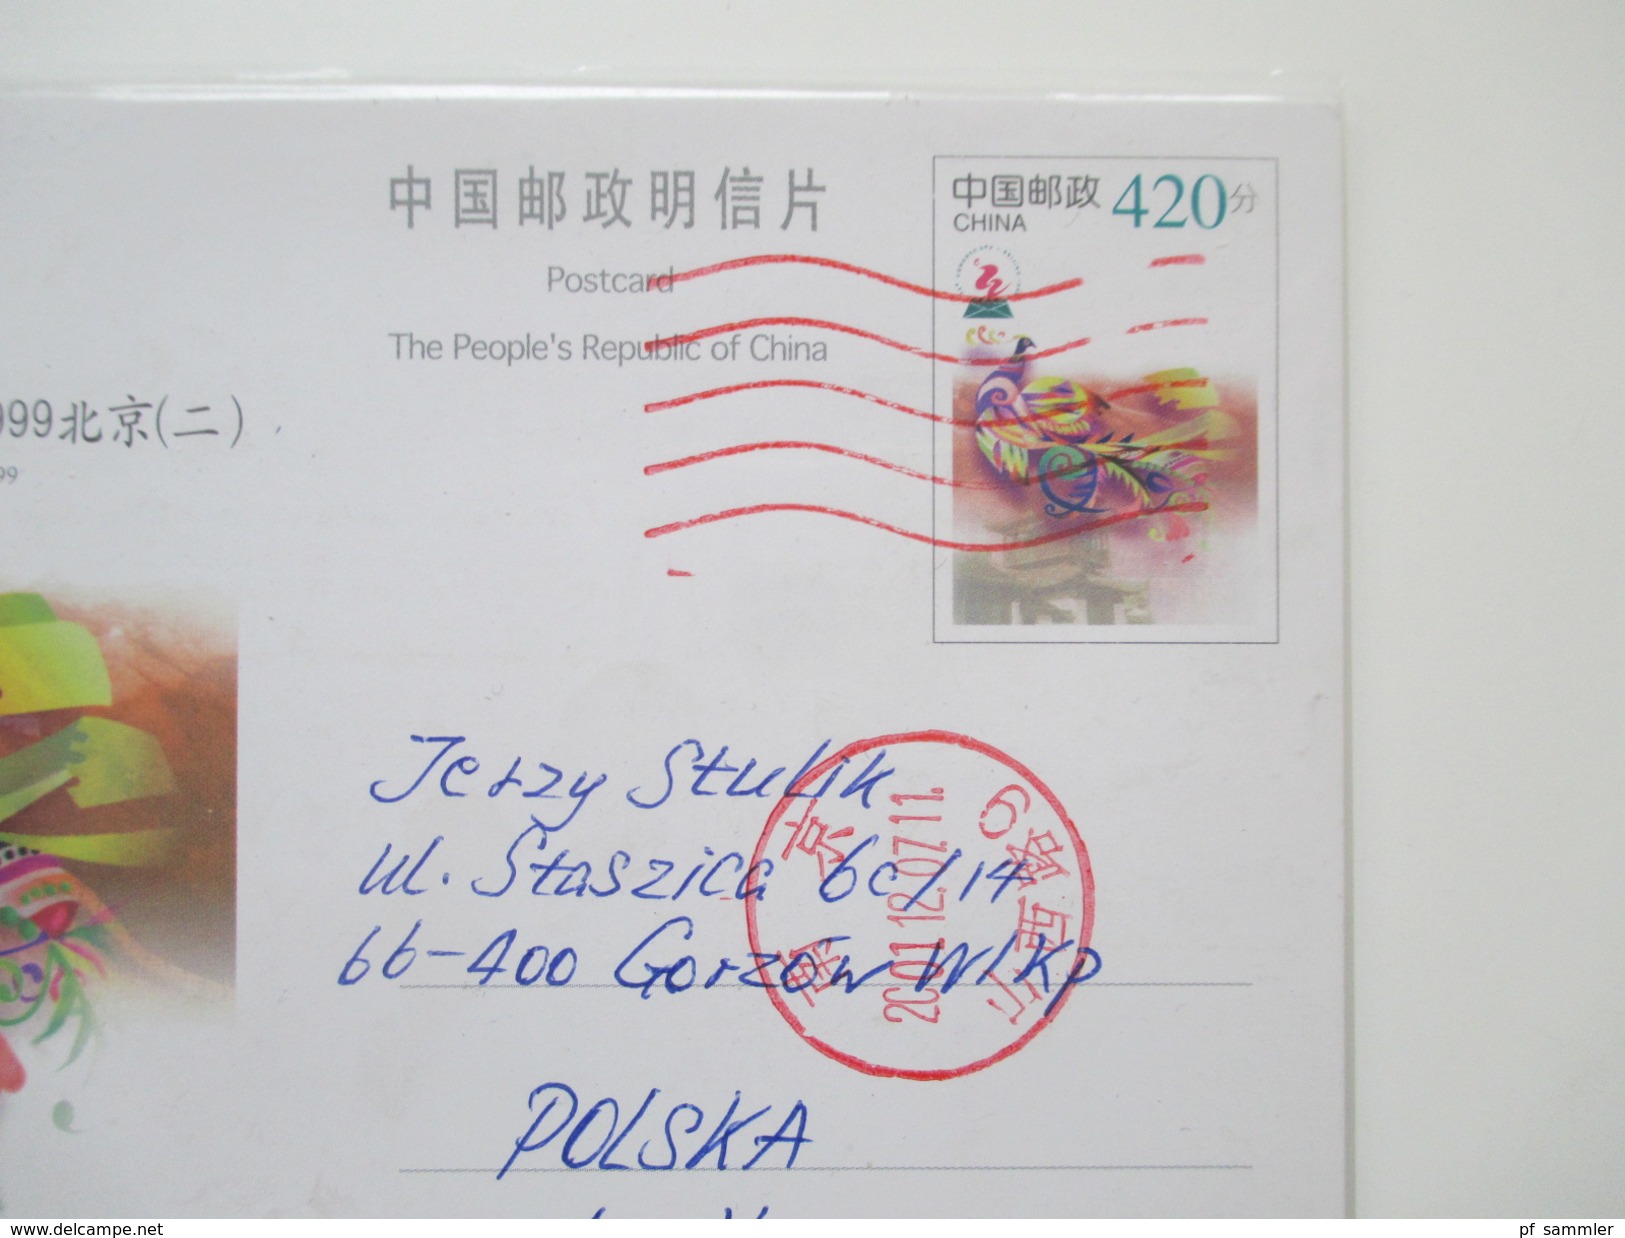 VR China 1980 / 90er Jahre 24 Briefe / Ganzsachen. Rote Stempel / Zierbriefe / FDC echt gelaufen nach Polen usw...